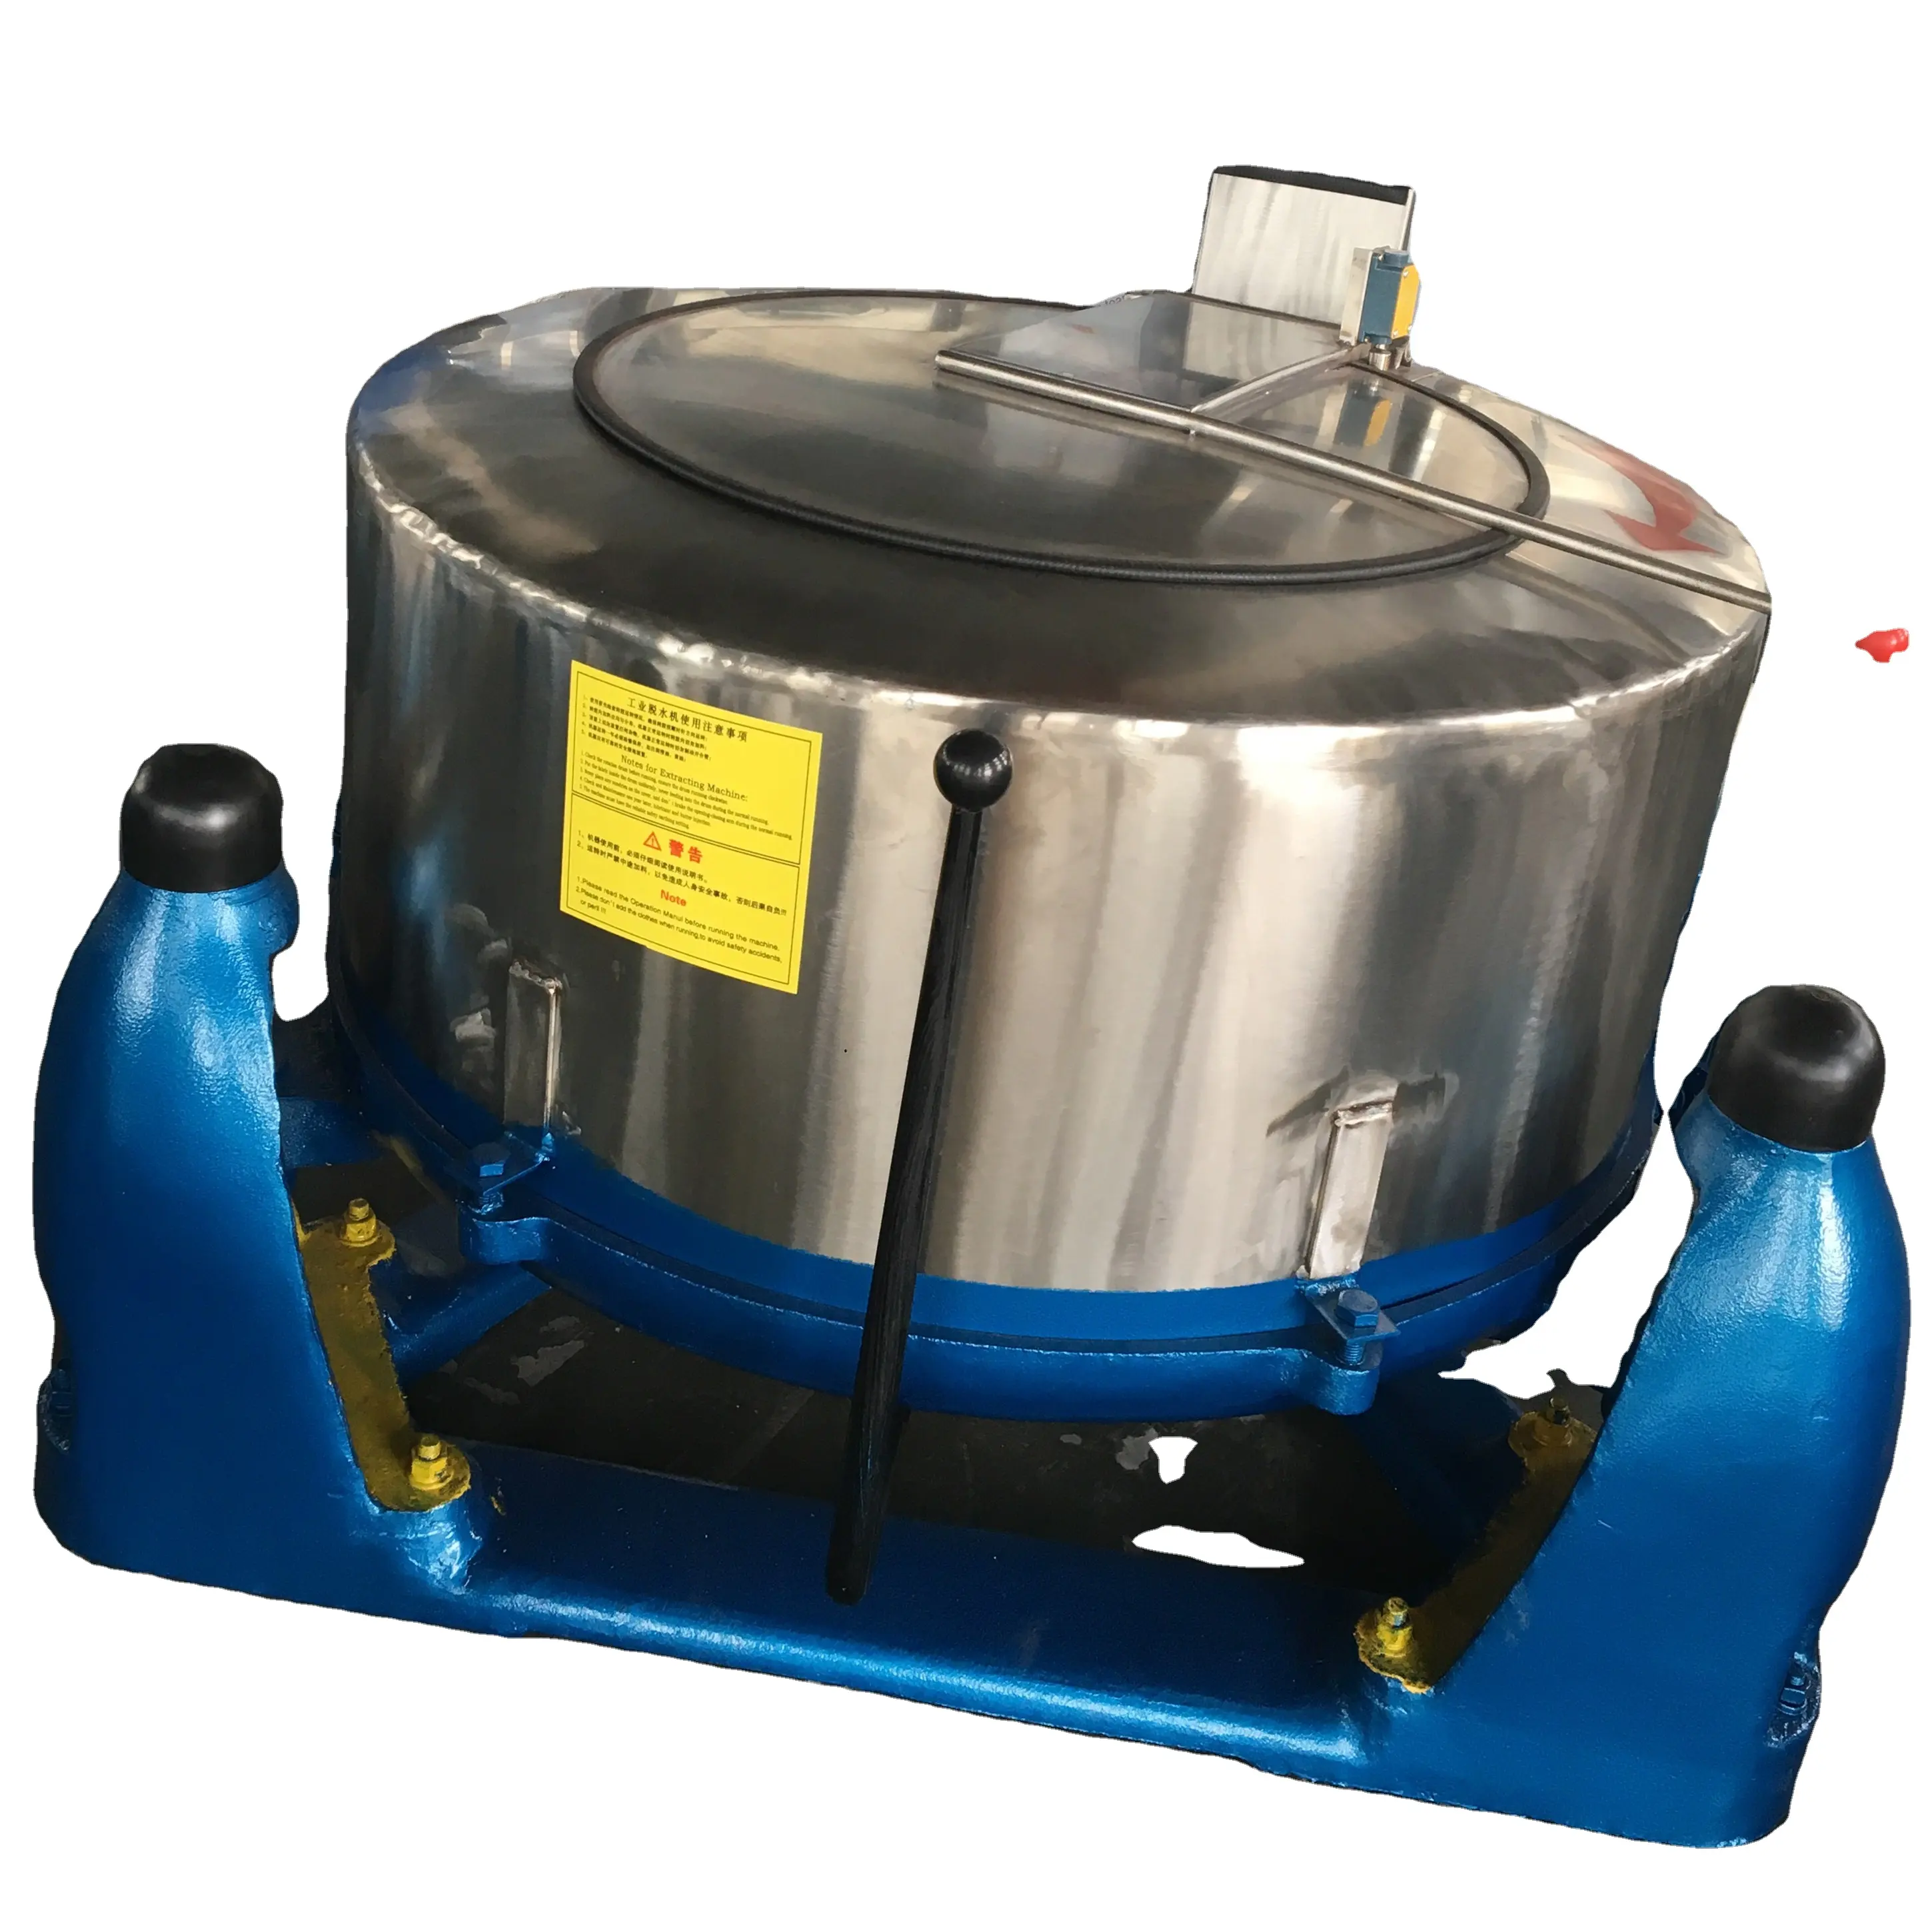 60kg textile essoreuse centrifuge industrielle hydro extracteur d'eau machine blanchisserie asséchage prix de la machine